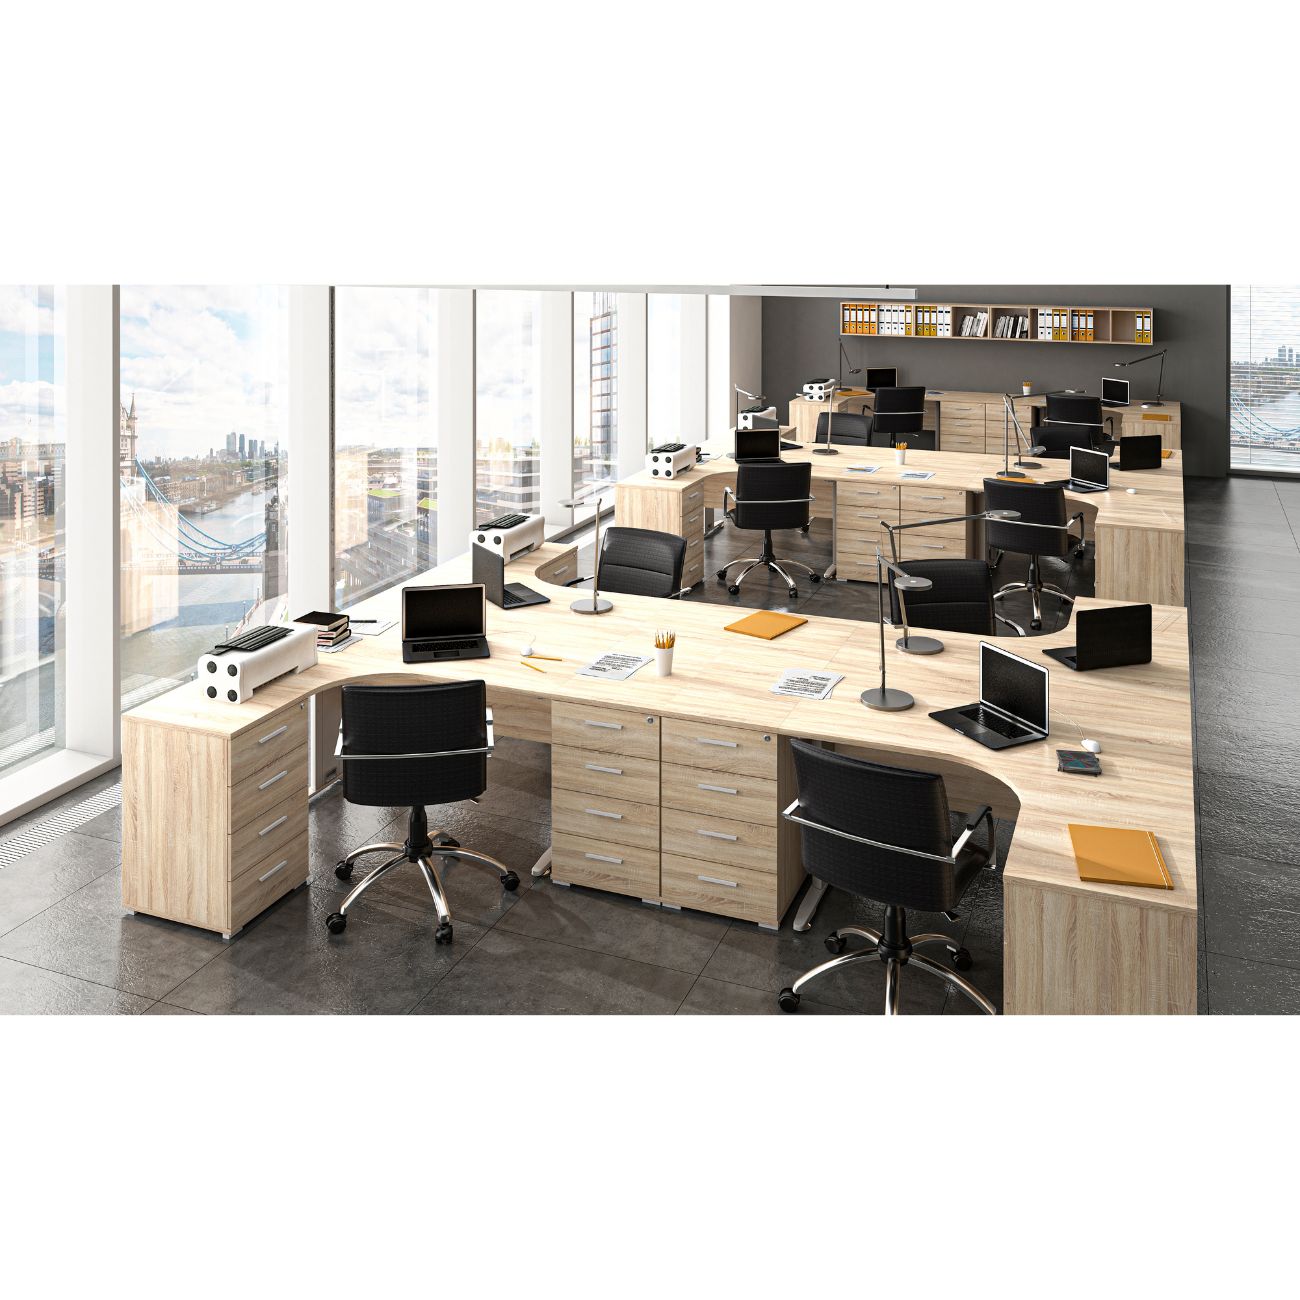 Zdjęcie przedstawiające nowoczesną przestrzeń biurową z meblami z kolekcji office w kolorze dąb sonoma